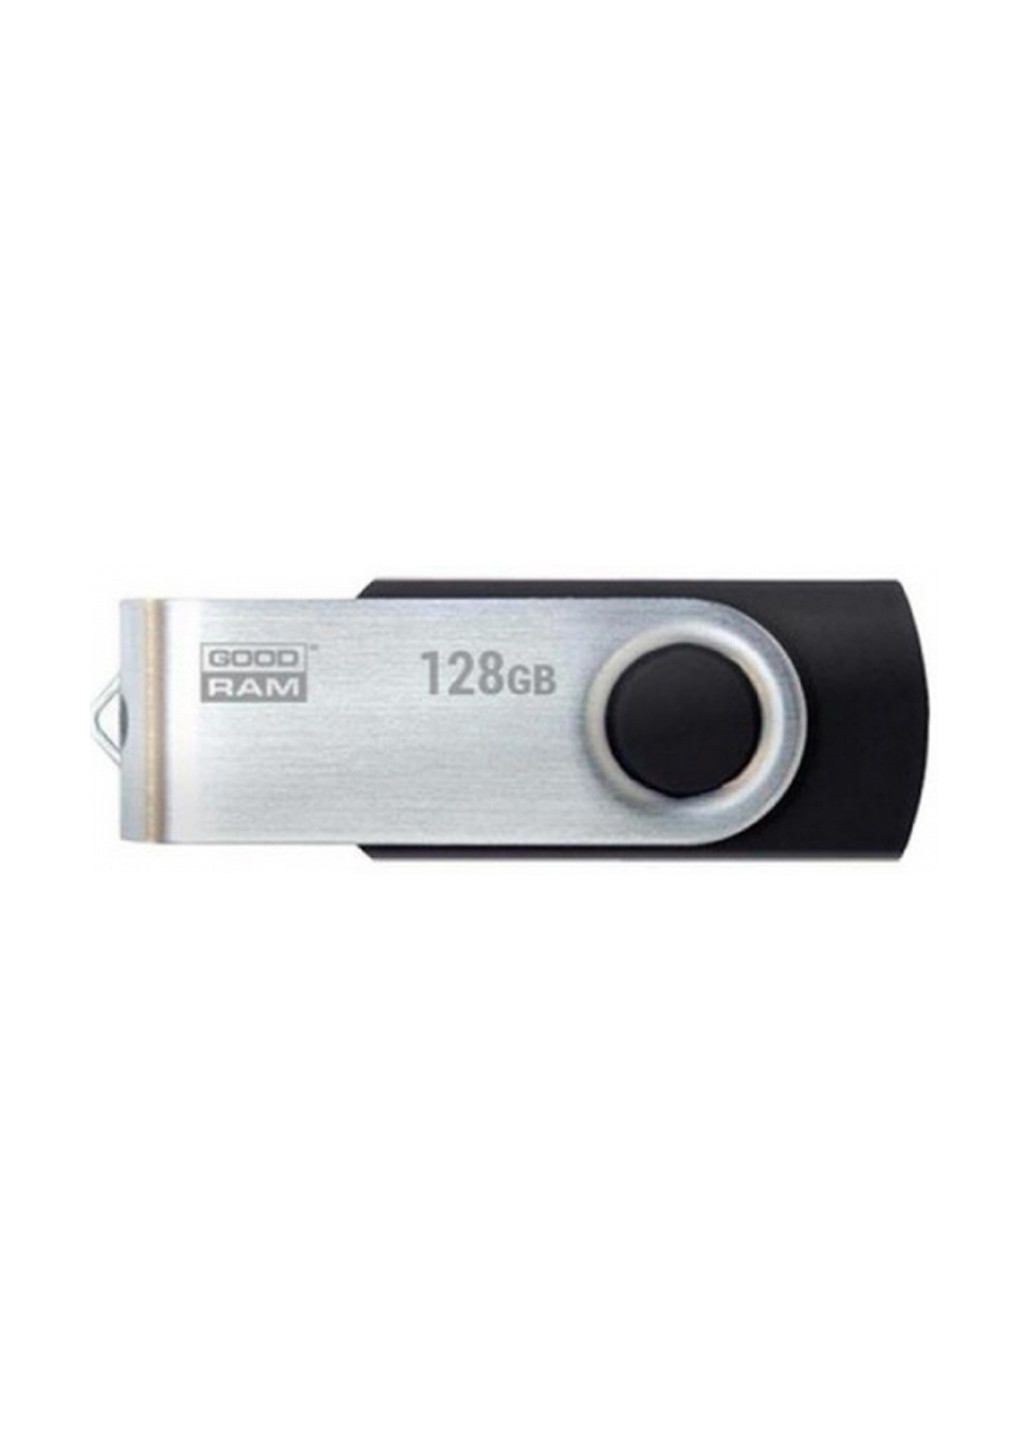 Флеш пам'ять USB Twister 128GB (UTS2-1280K0R11) Goodram флеш память usb goodram twister 128gb (uts2-1280k0r11) (136742765)